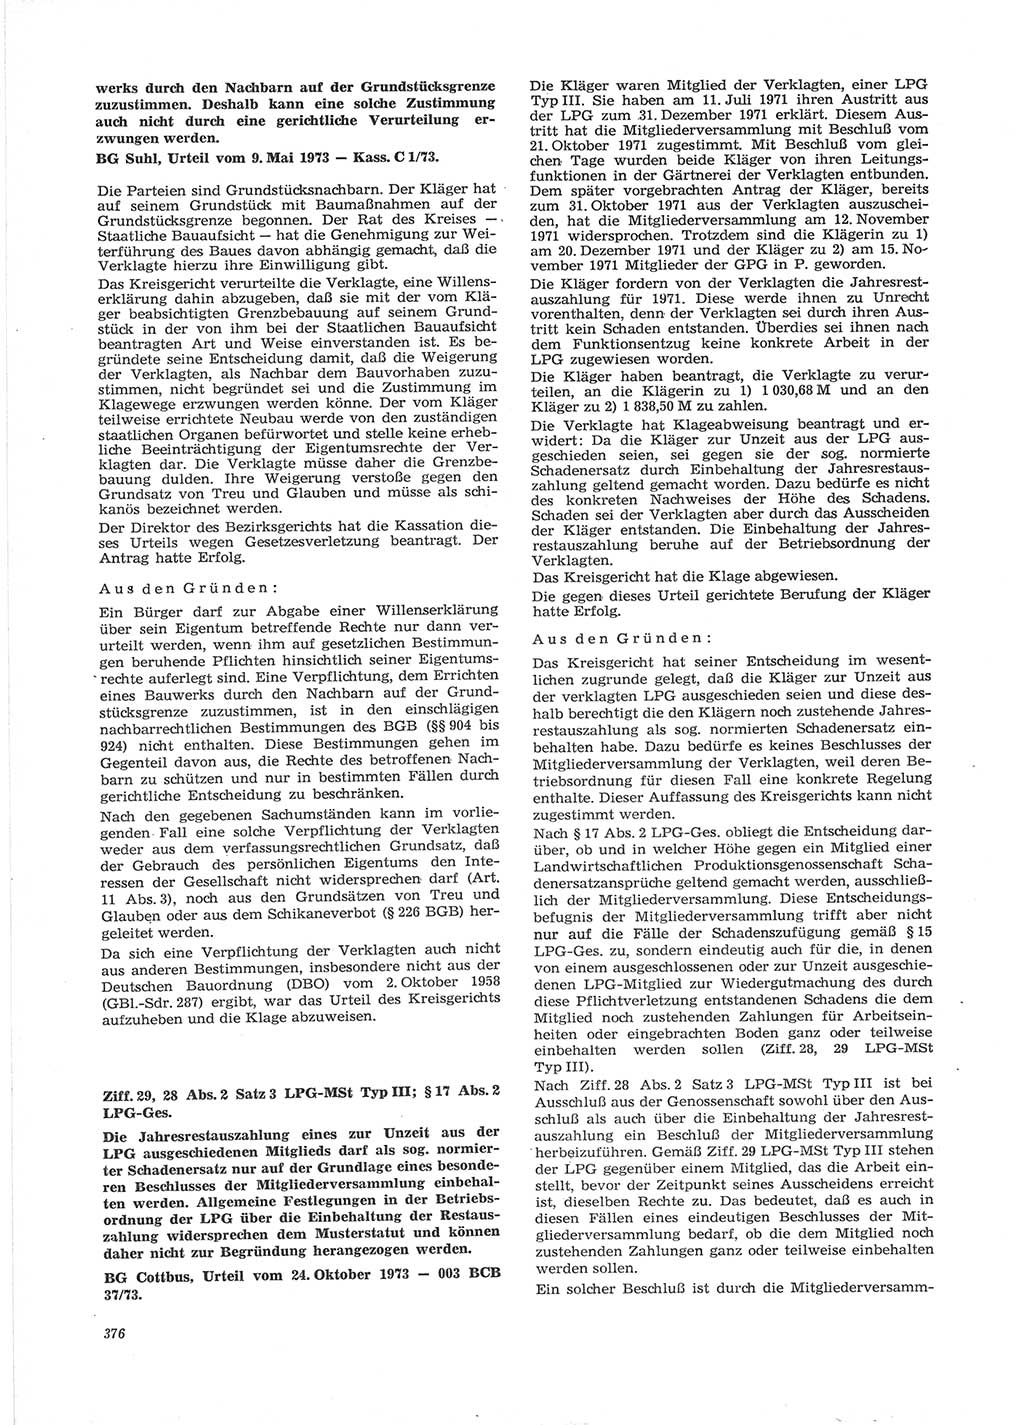 Neue Justiz (NJ), Zeitschrift für Recht und Rechtswissenschaft [Deutsche Demokratische Republik (DDR)], 28. Jahrgang 1974, Seite 376 (NJ DDR 1974, S. 376)